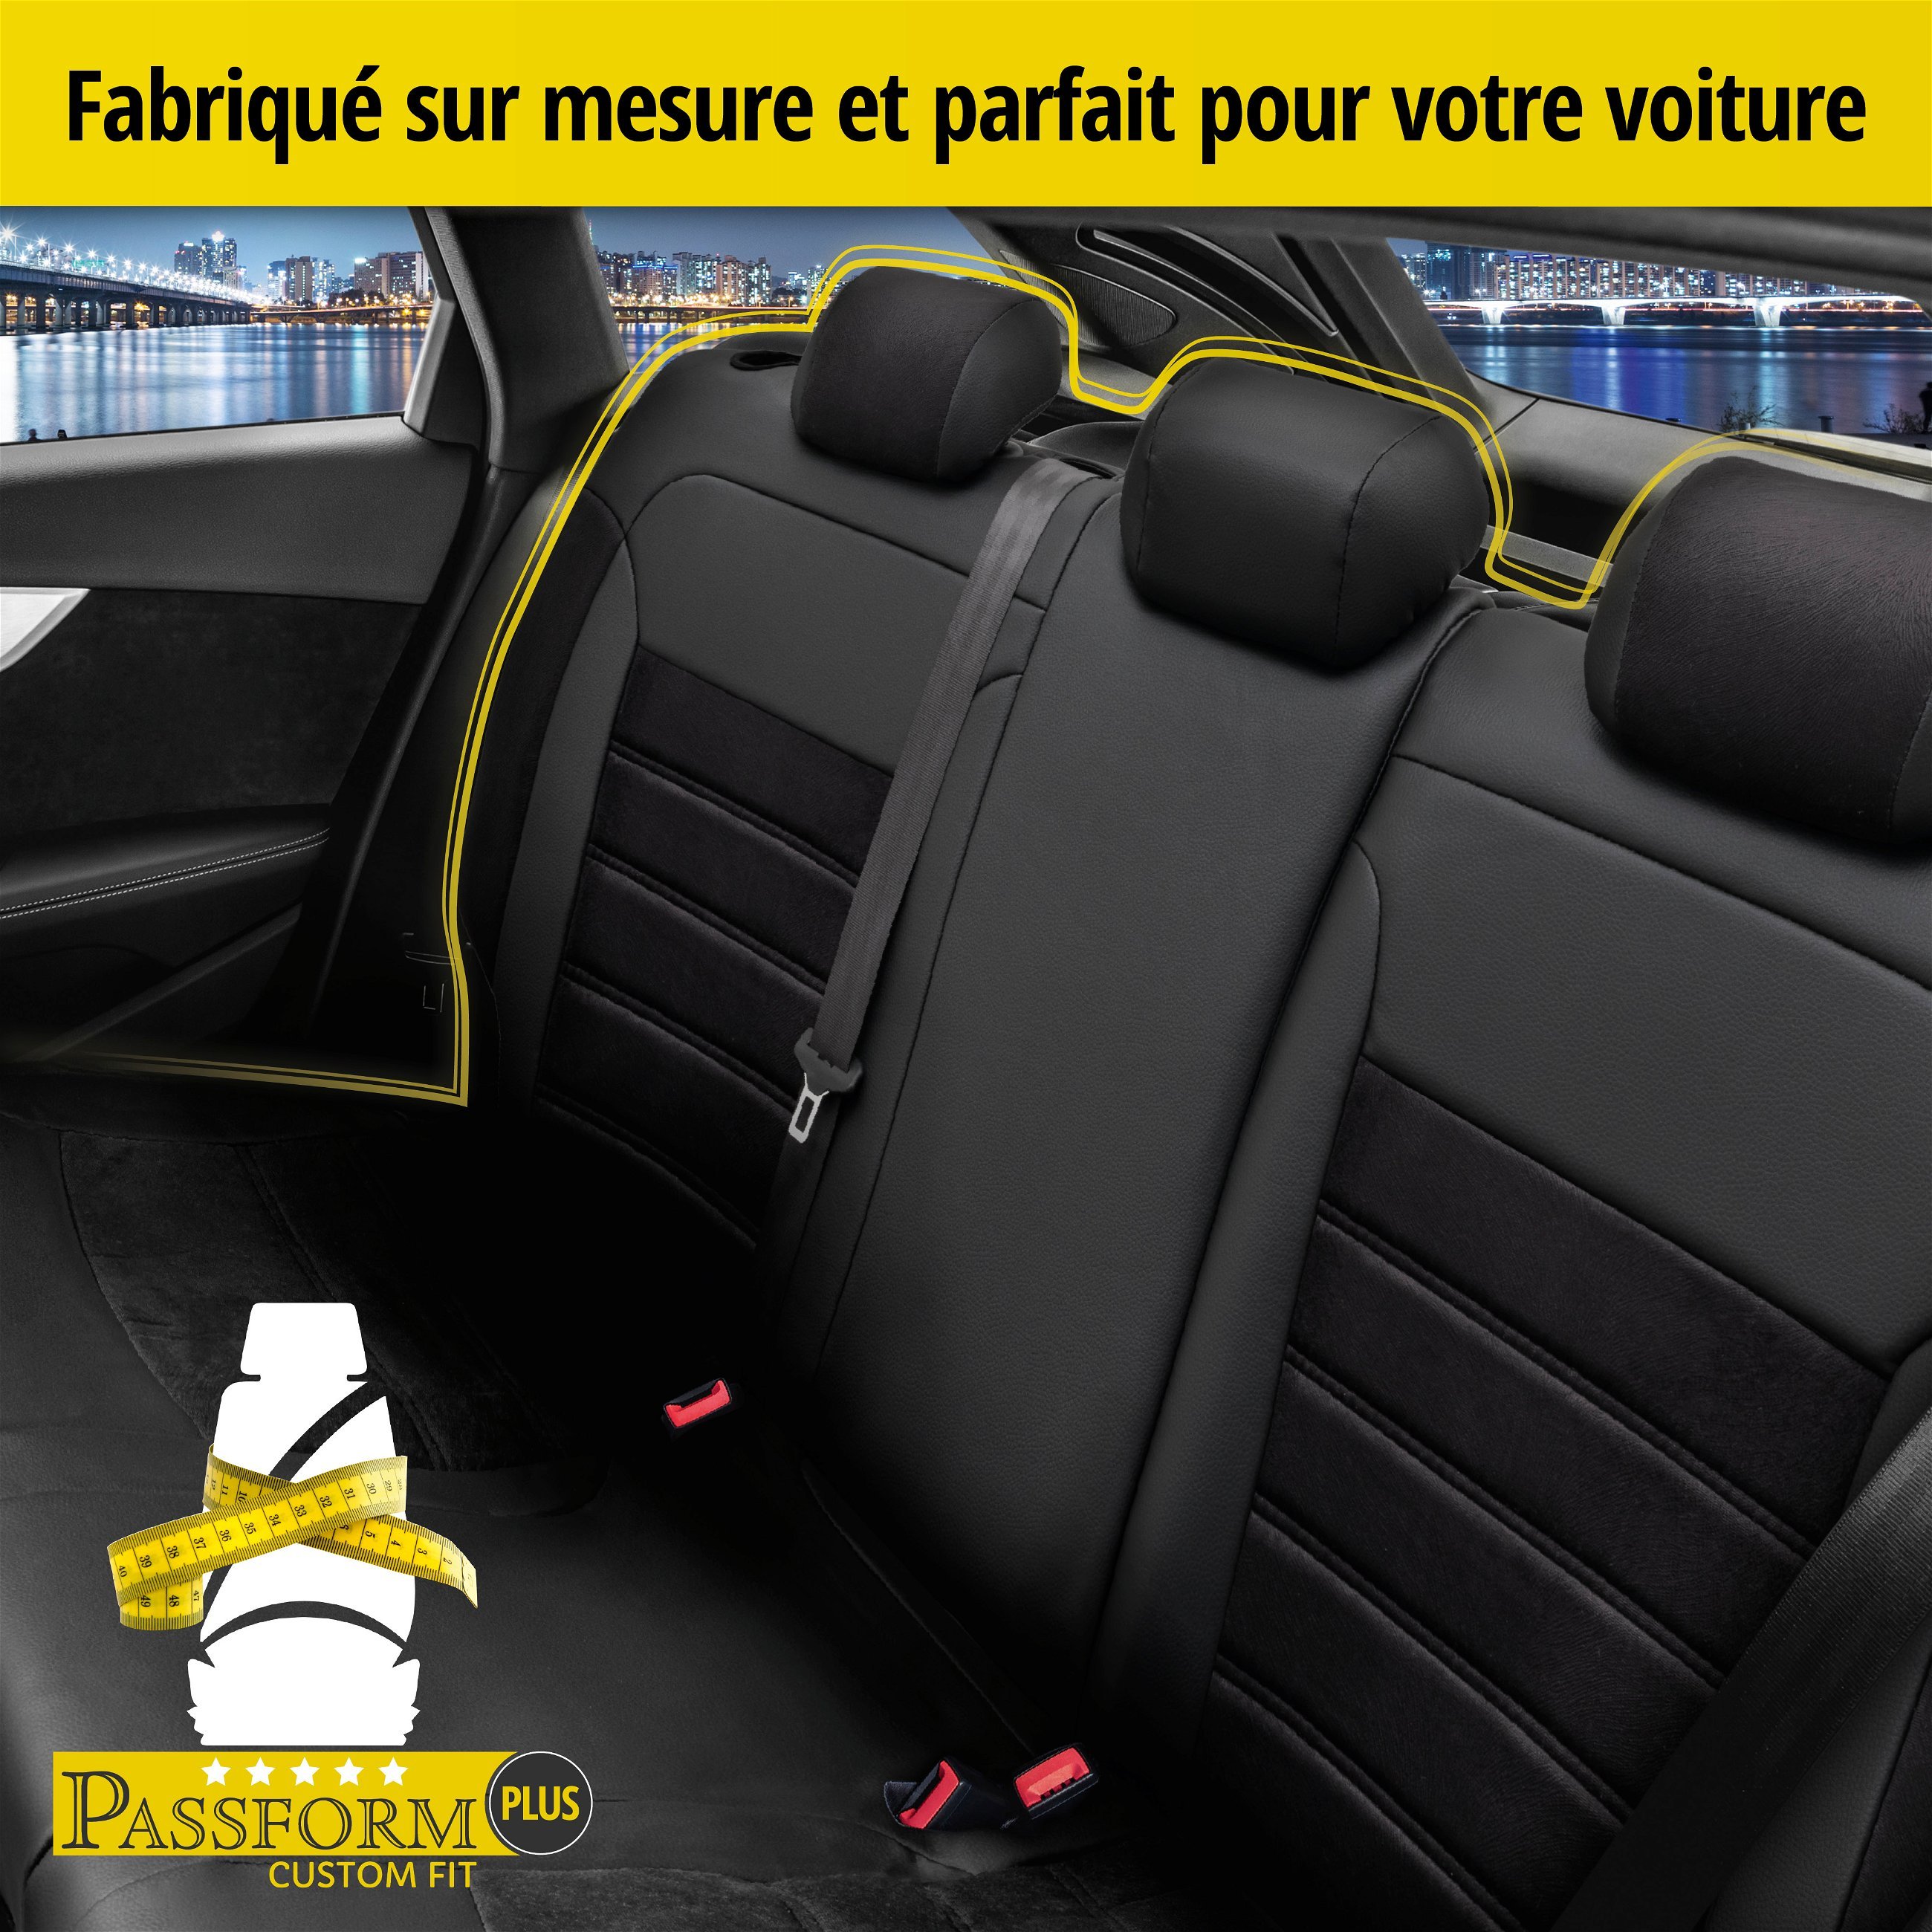 Housse de siège Bari pour VW Passat Variant (3G5, CB5) 08/2014-auj., 1 housse de siège arrière pour les sièges normaux